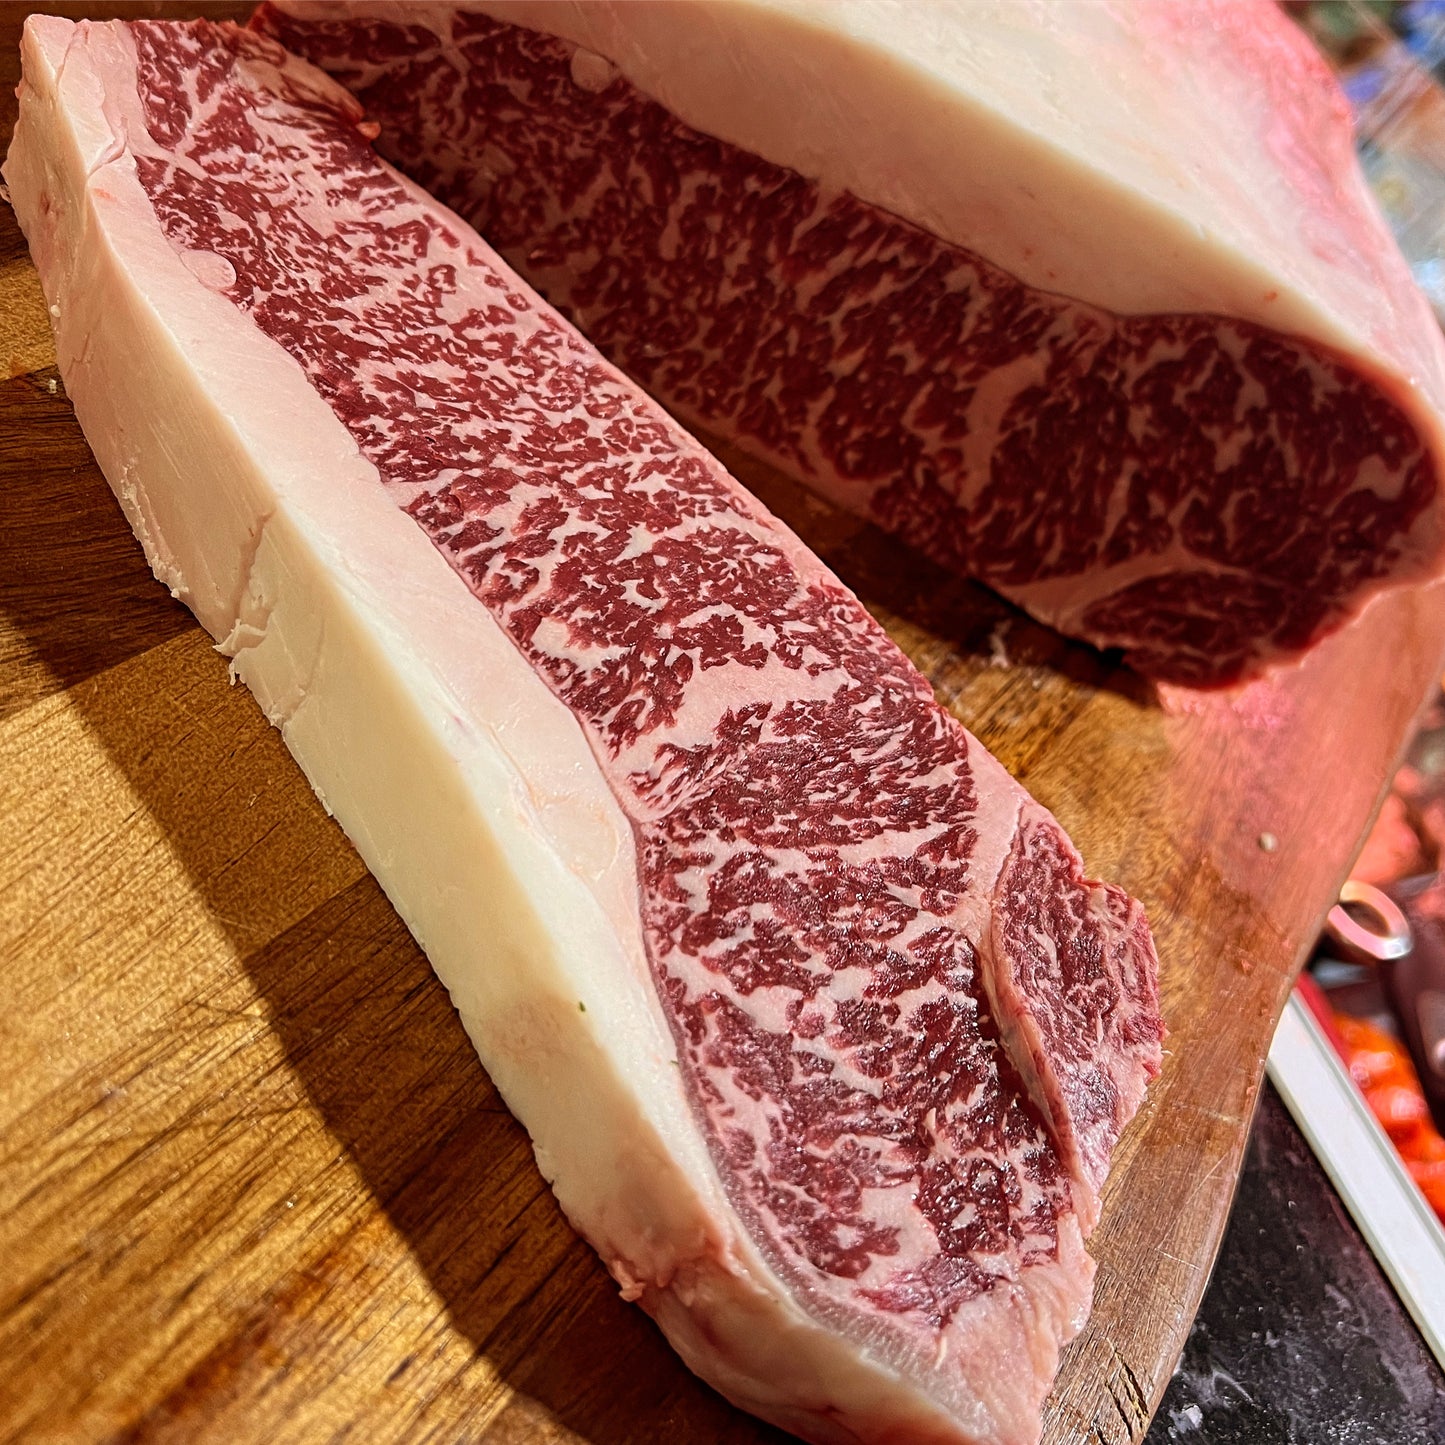 Japanese A5 Wagyu Sirloin Steaks